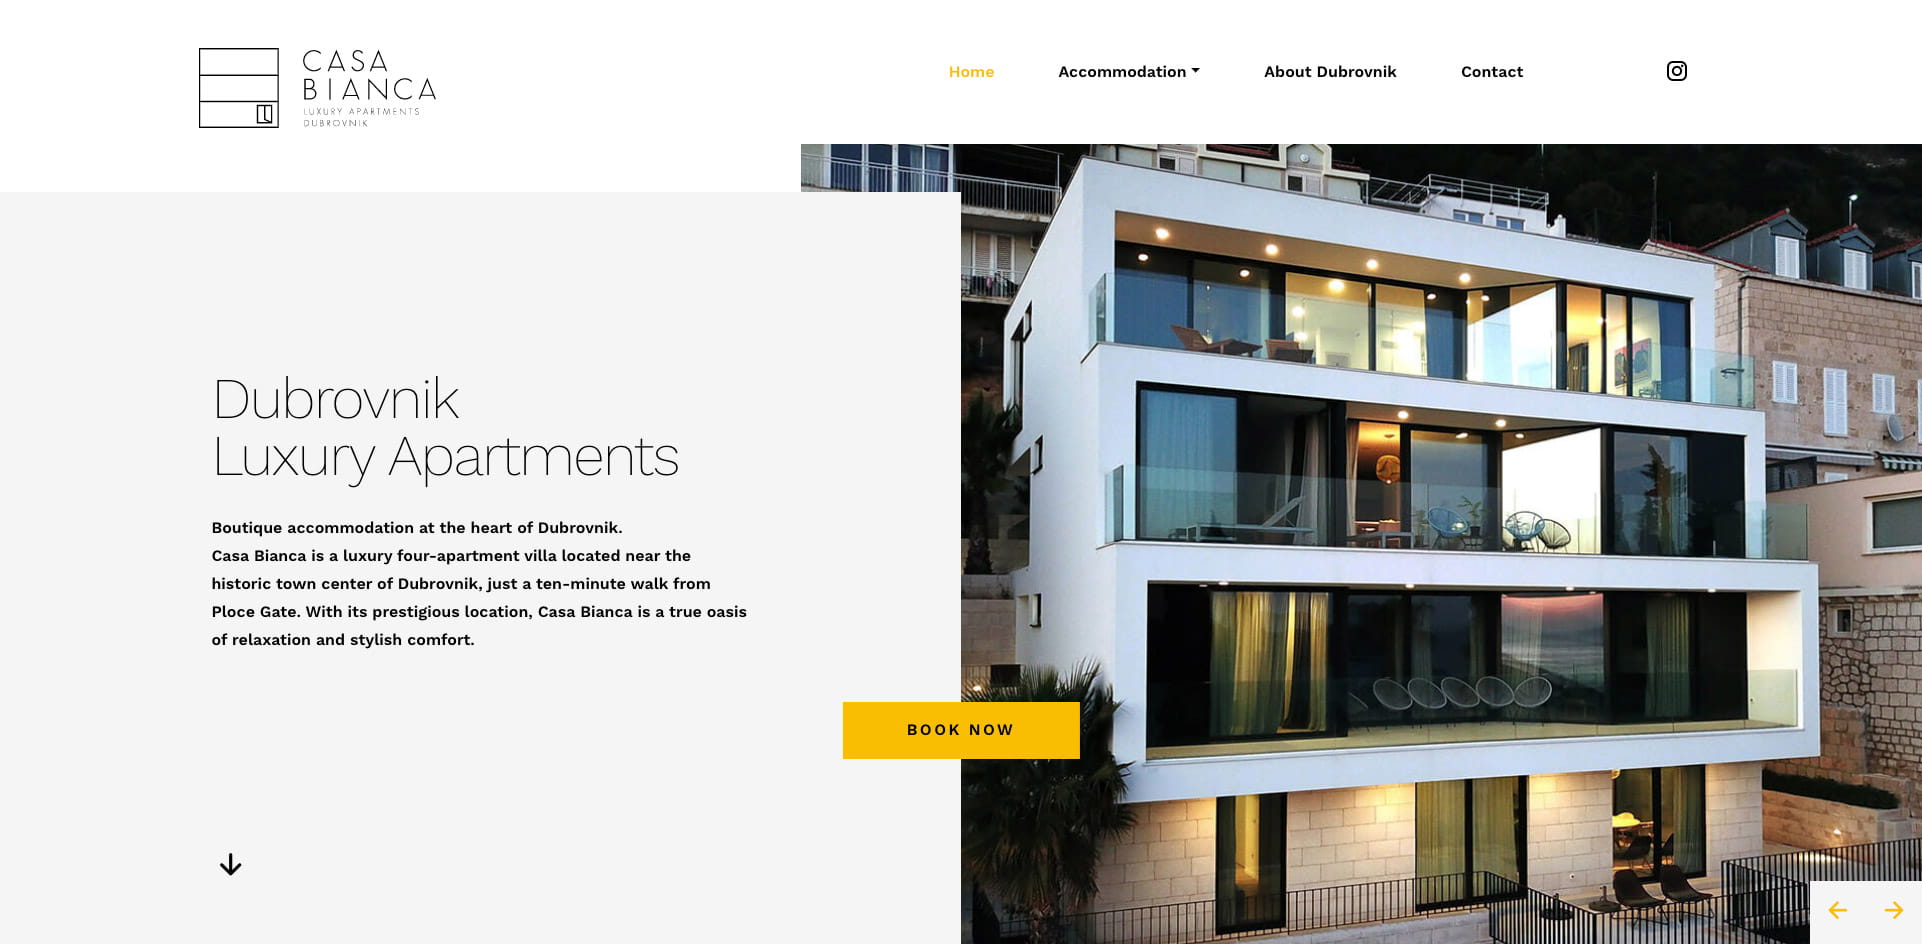 Dizajn i izrada web stranice za turizam Casa Bianca - intro prikaz naslovnice web stranice